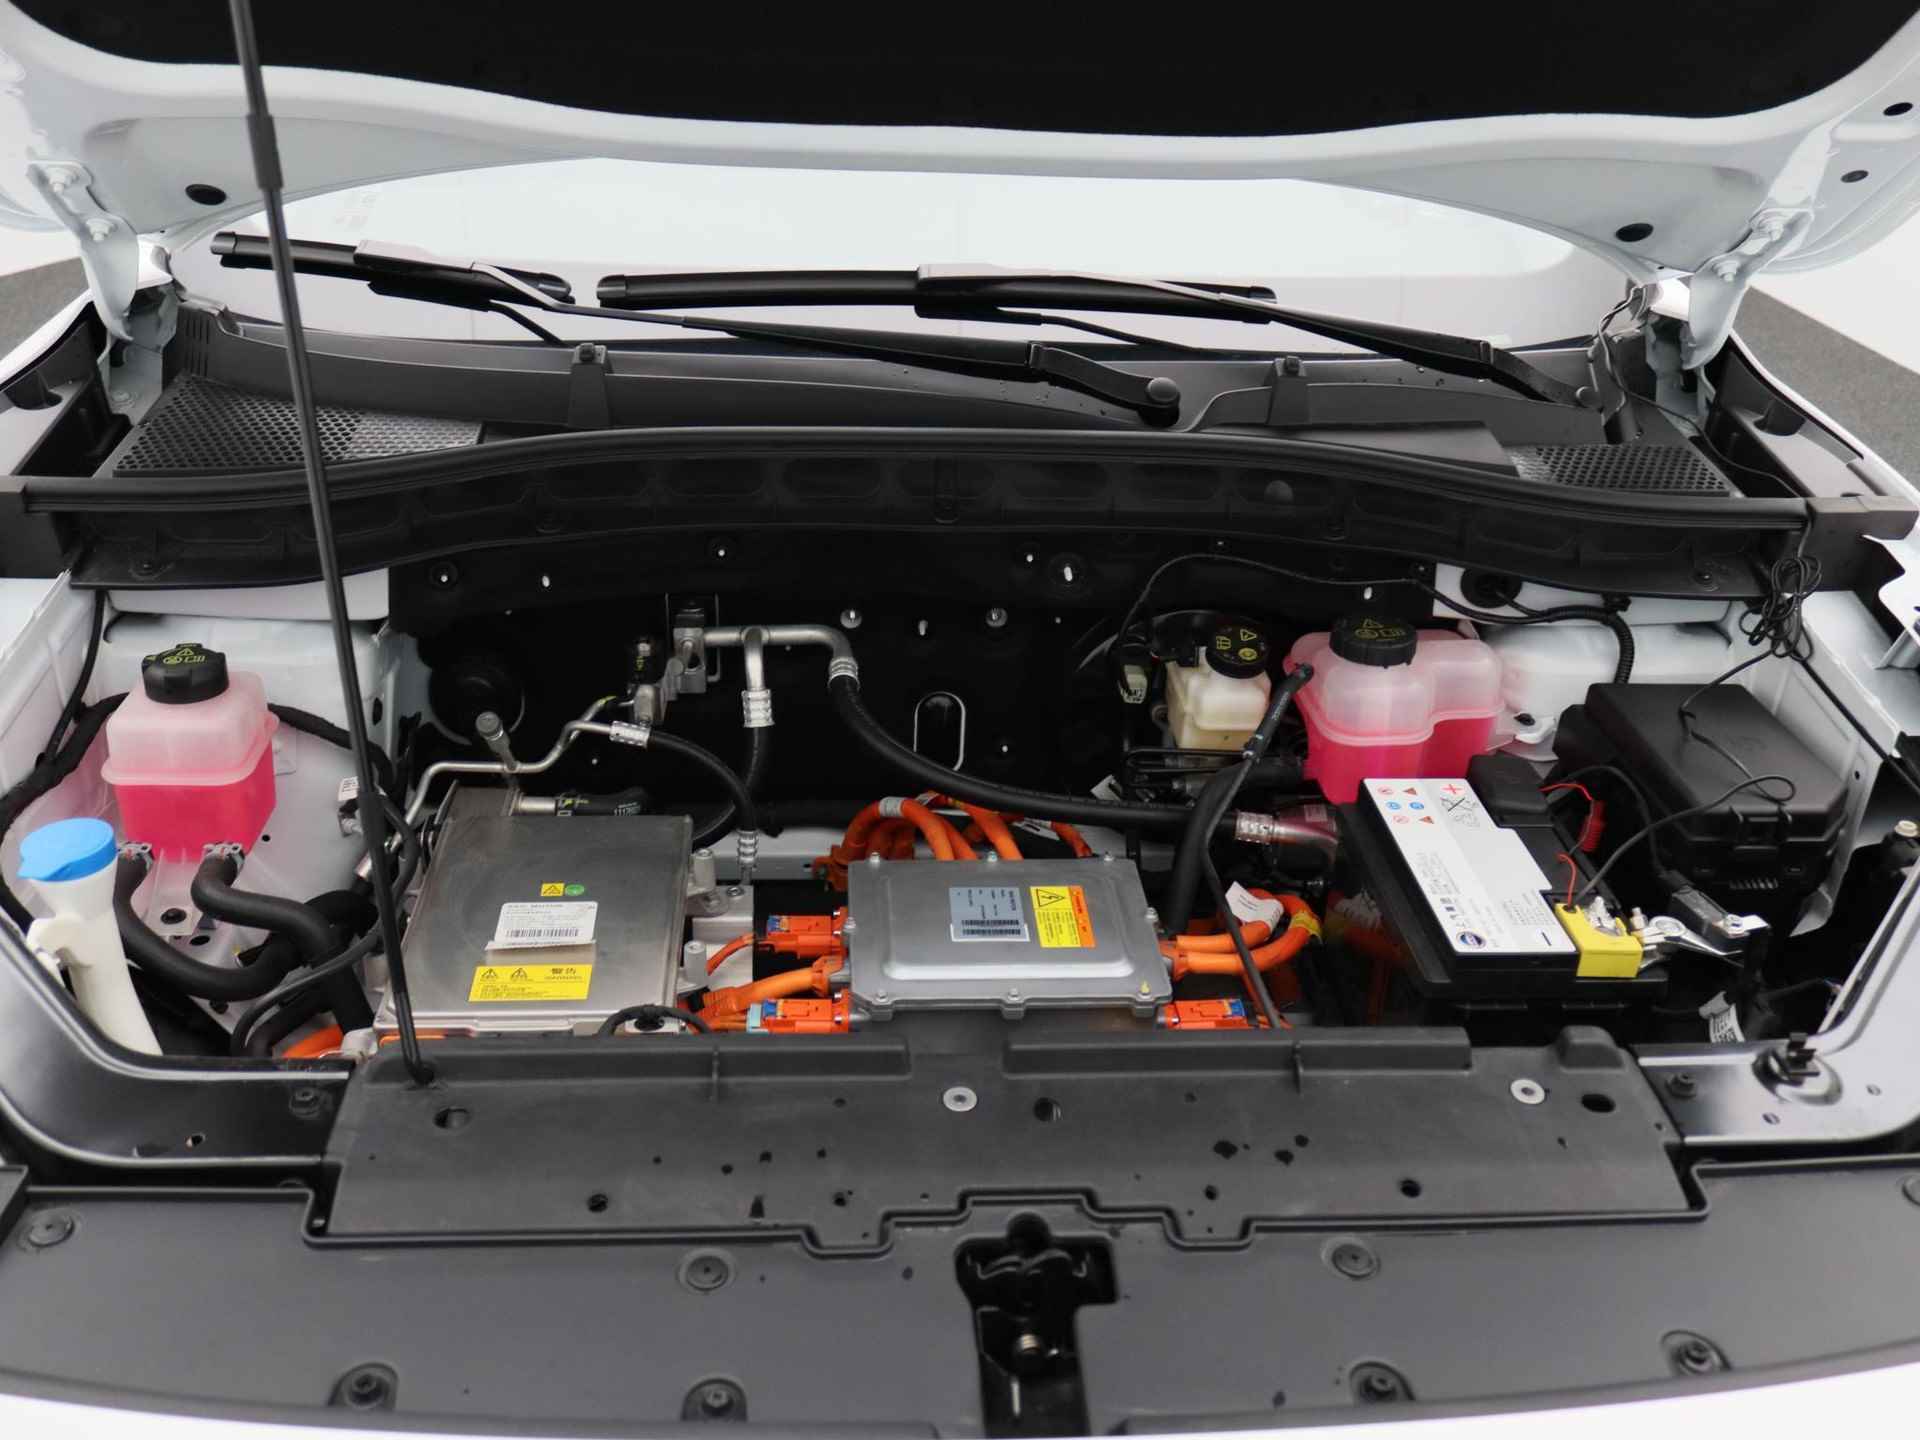 MG ZS EV Standard Range Luxury | 320 km WLTP | Navigatie | Panorama dak | 7 jaar 150.000 km garantie | Nu €2500,- Upgrade Actie Voordeel! | Wordt in alle kleuren verwacht! - 18/19